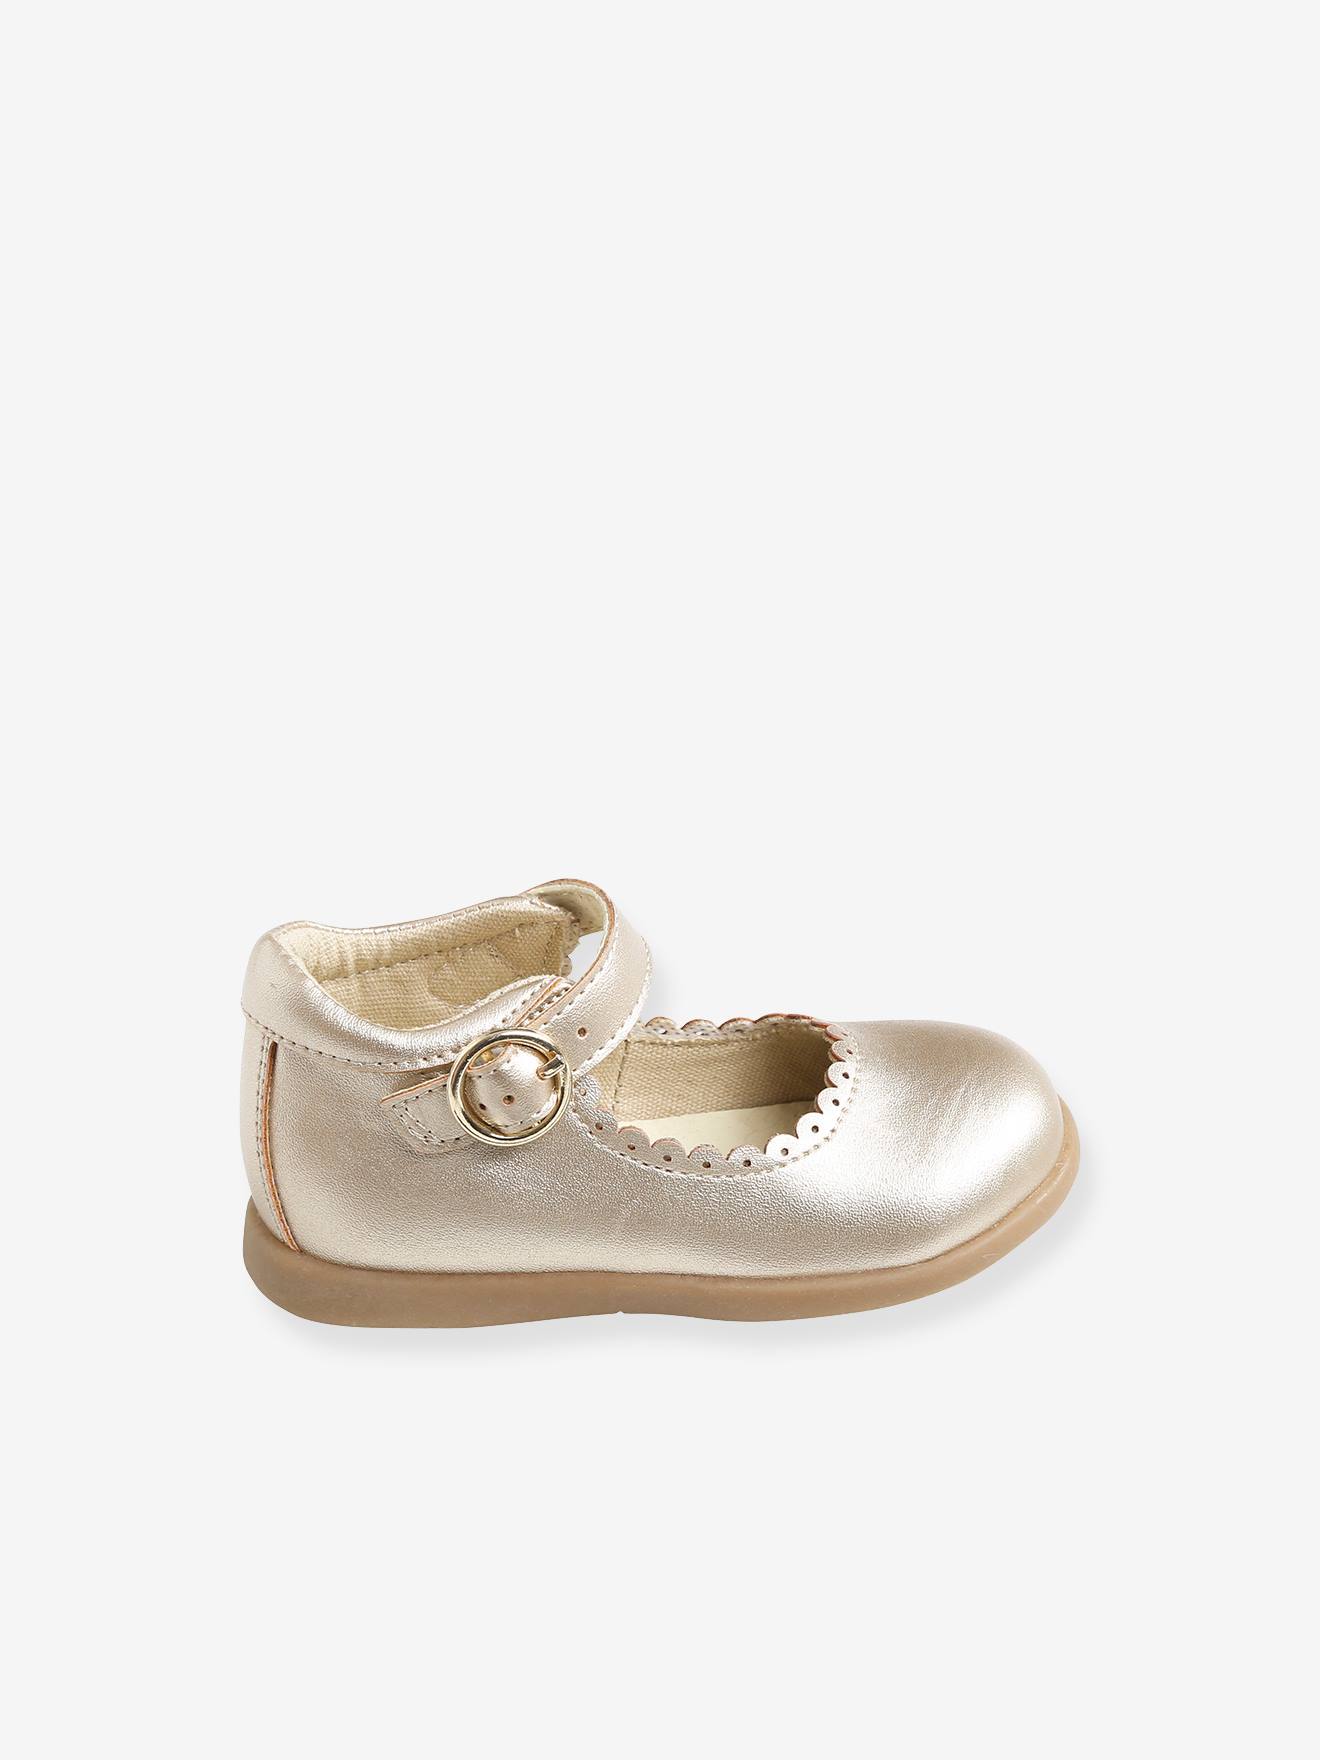 Ballerinas Glitzer Schuhe Weiß 2-74 Mädchen Kinder Baby Festlich Größe 22